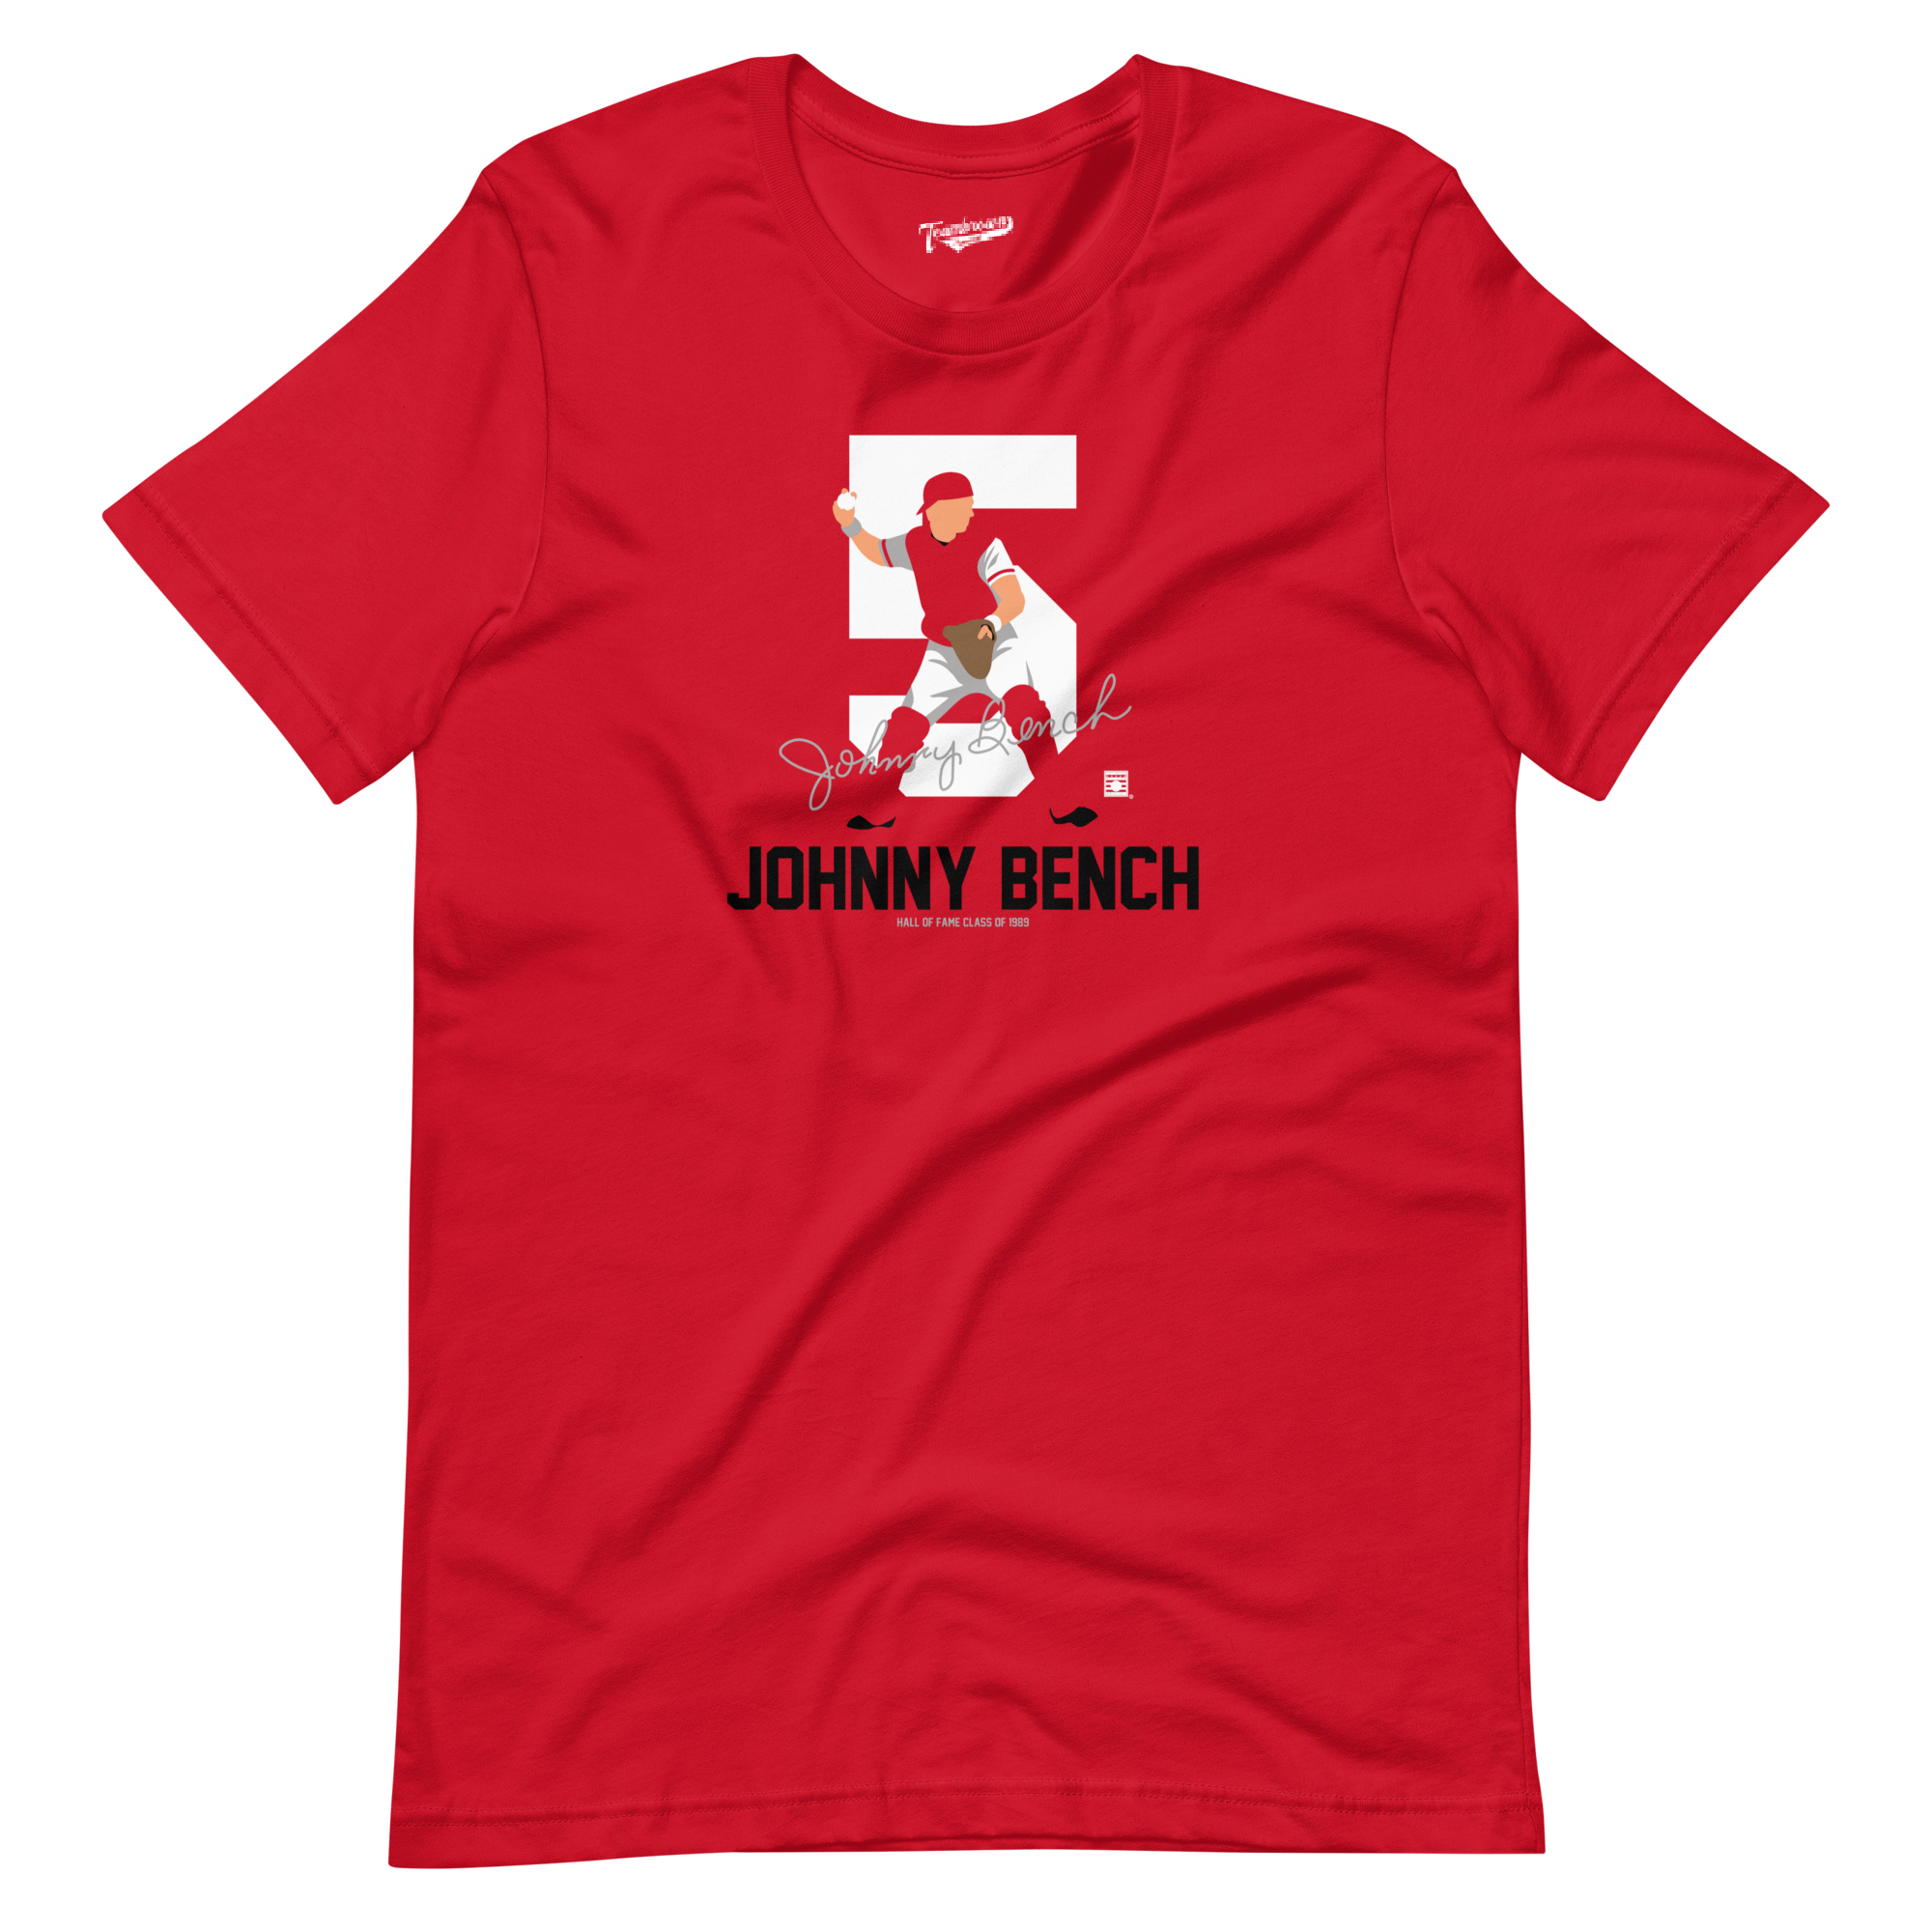 Johnny Bench T-Shirt, Black NBHOF Shirt